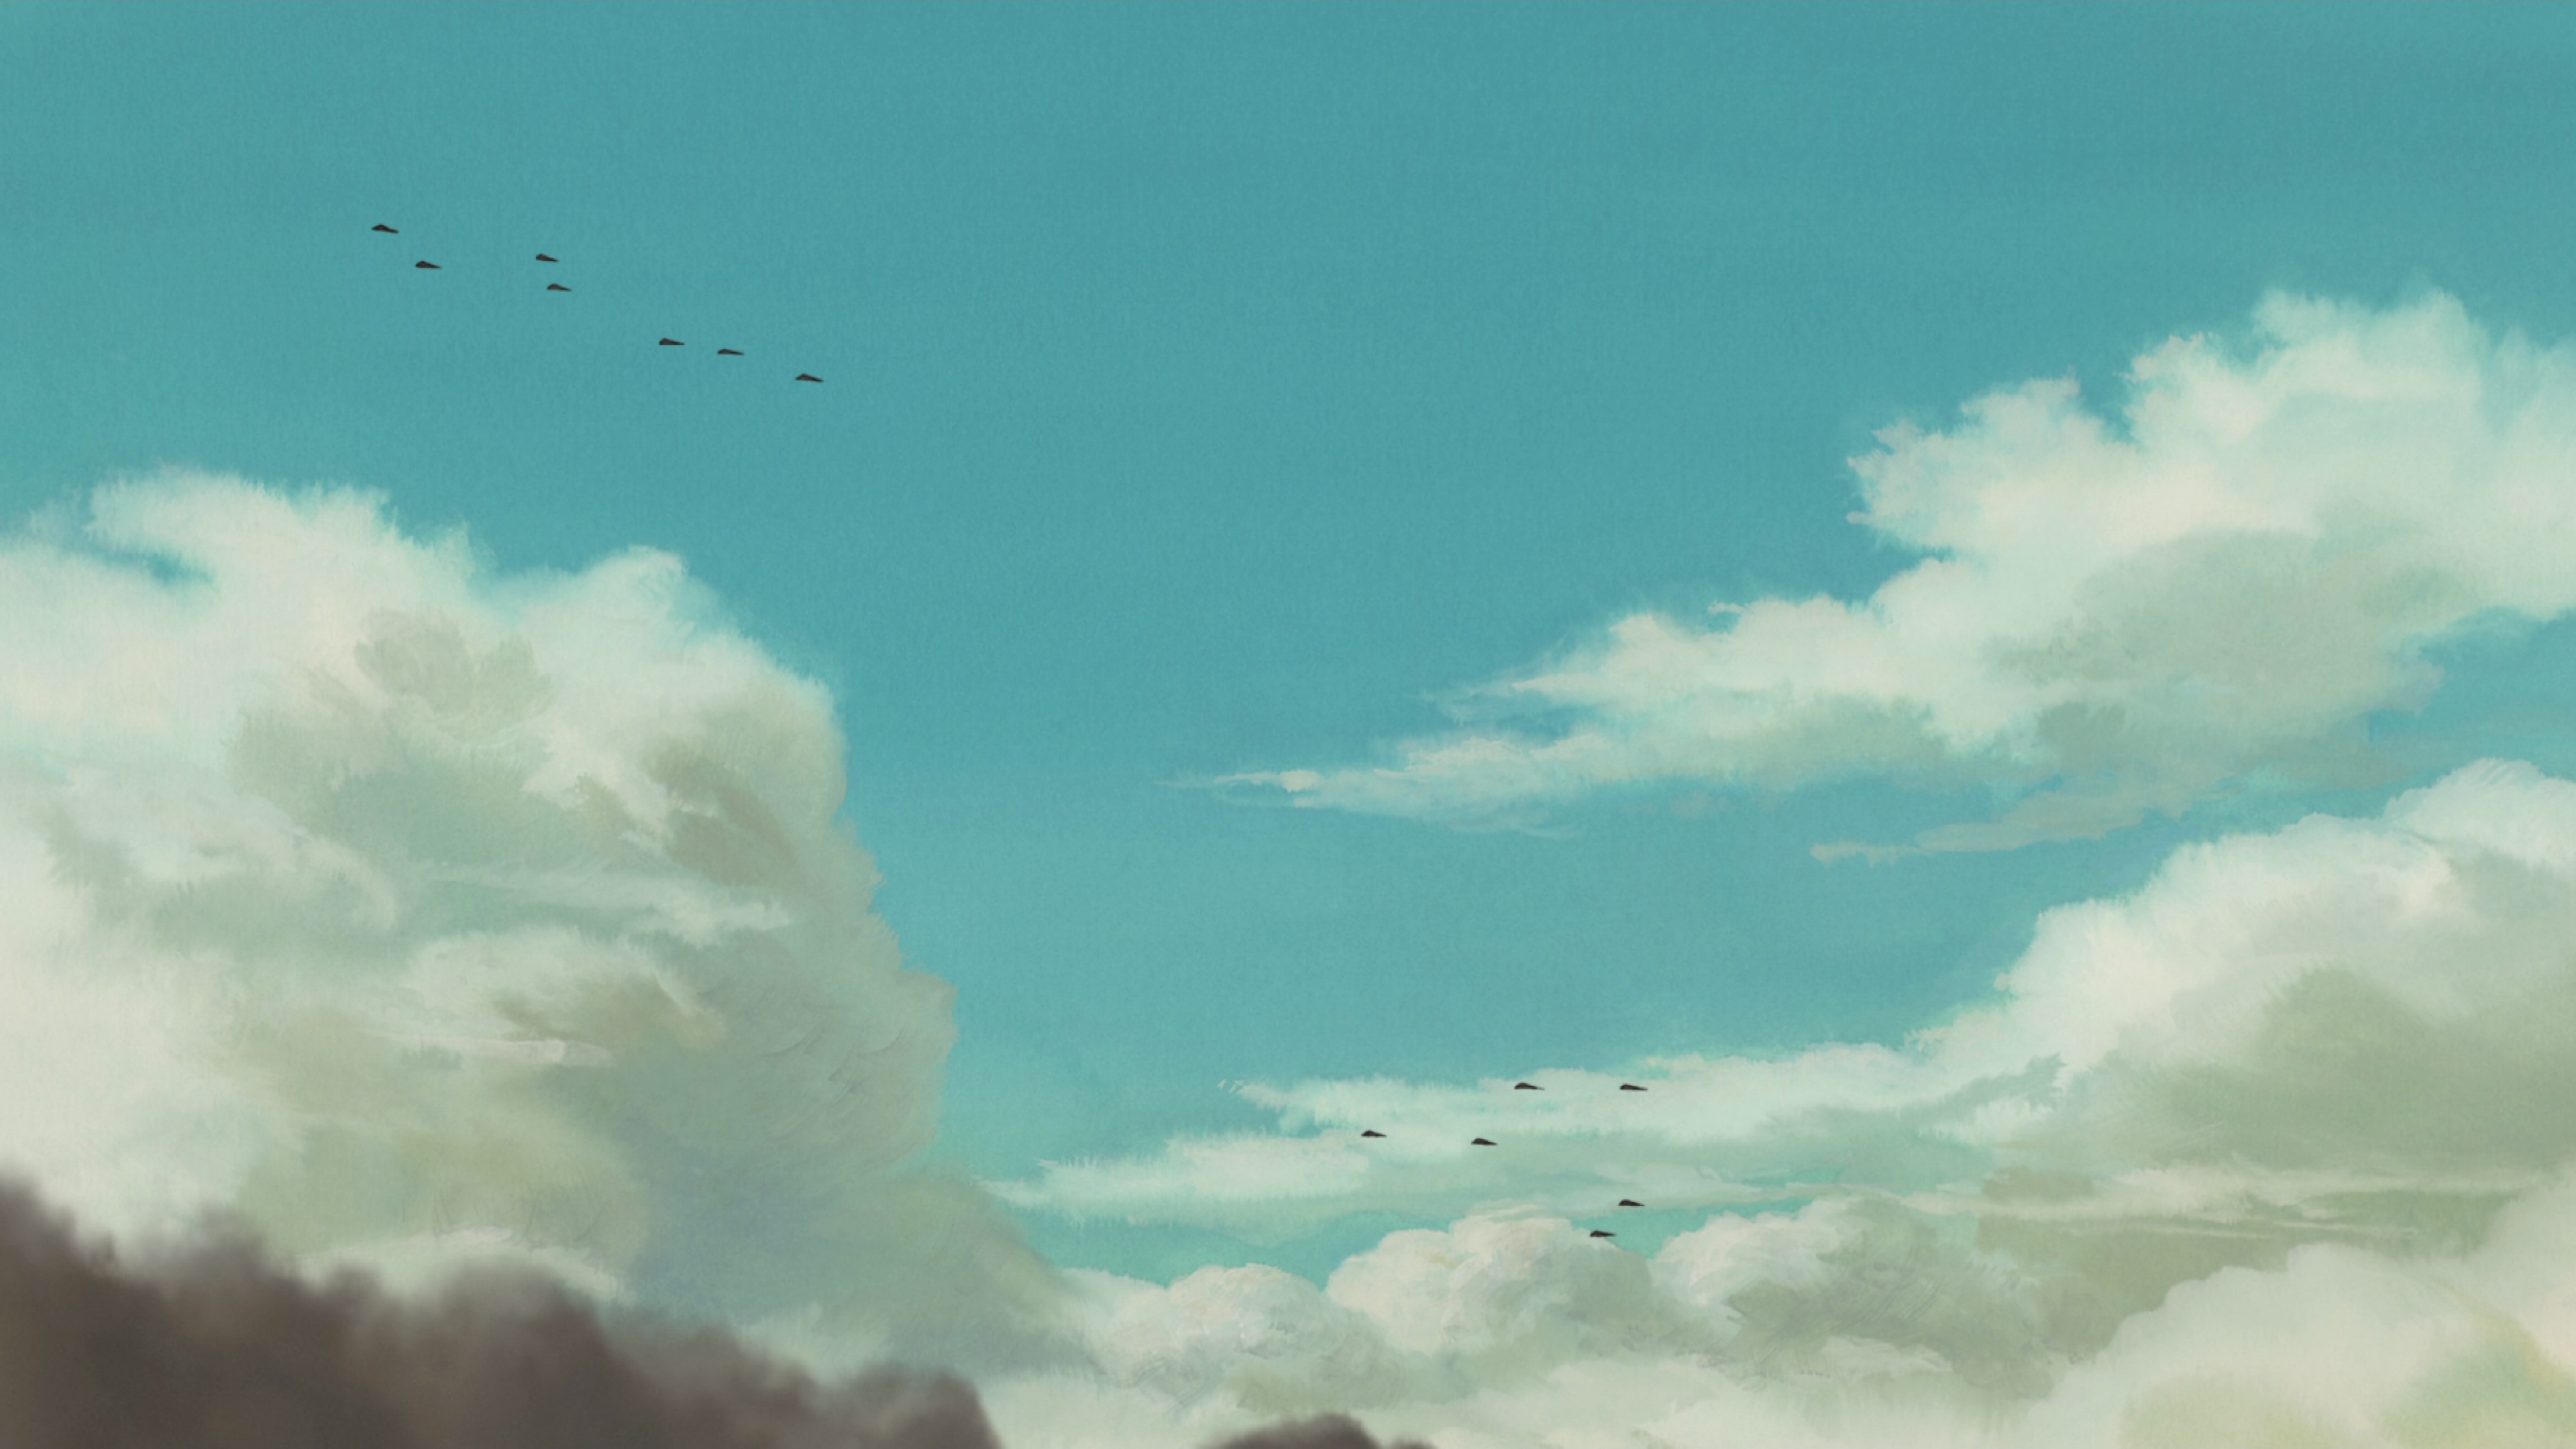 Studio ghibli Hayao miyazaki HD Wallpapers, Desktop Backgrounds ...